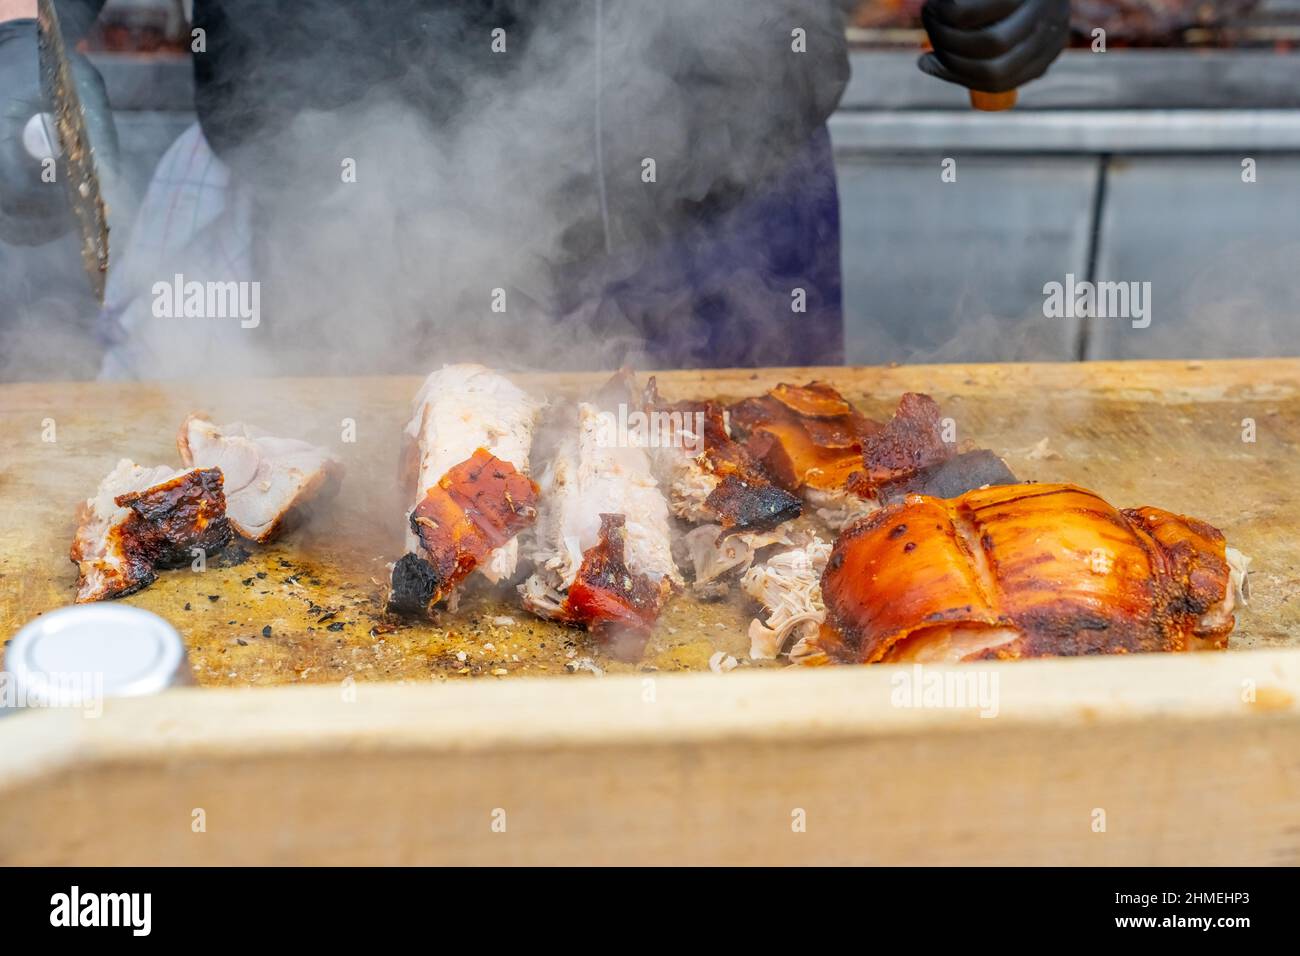 Straßengrill, gebratenes Fleisch. Ein Mann schneidet ein gebratenes Stück Fleisch in Portionen. Traditionelle weihnachtsmarkt in Monaco. Hochwertige Fotos Stockfoto